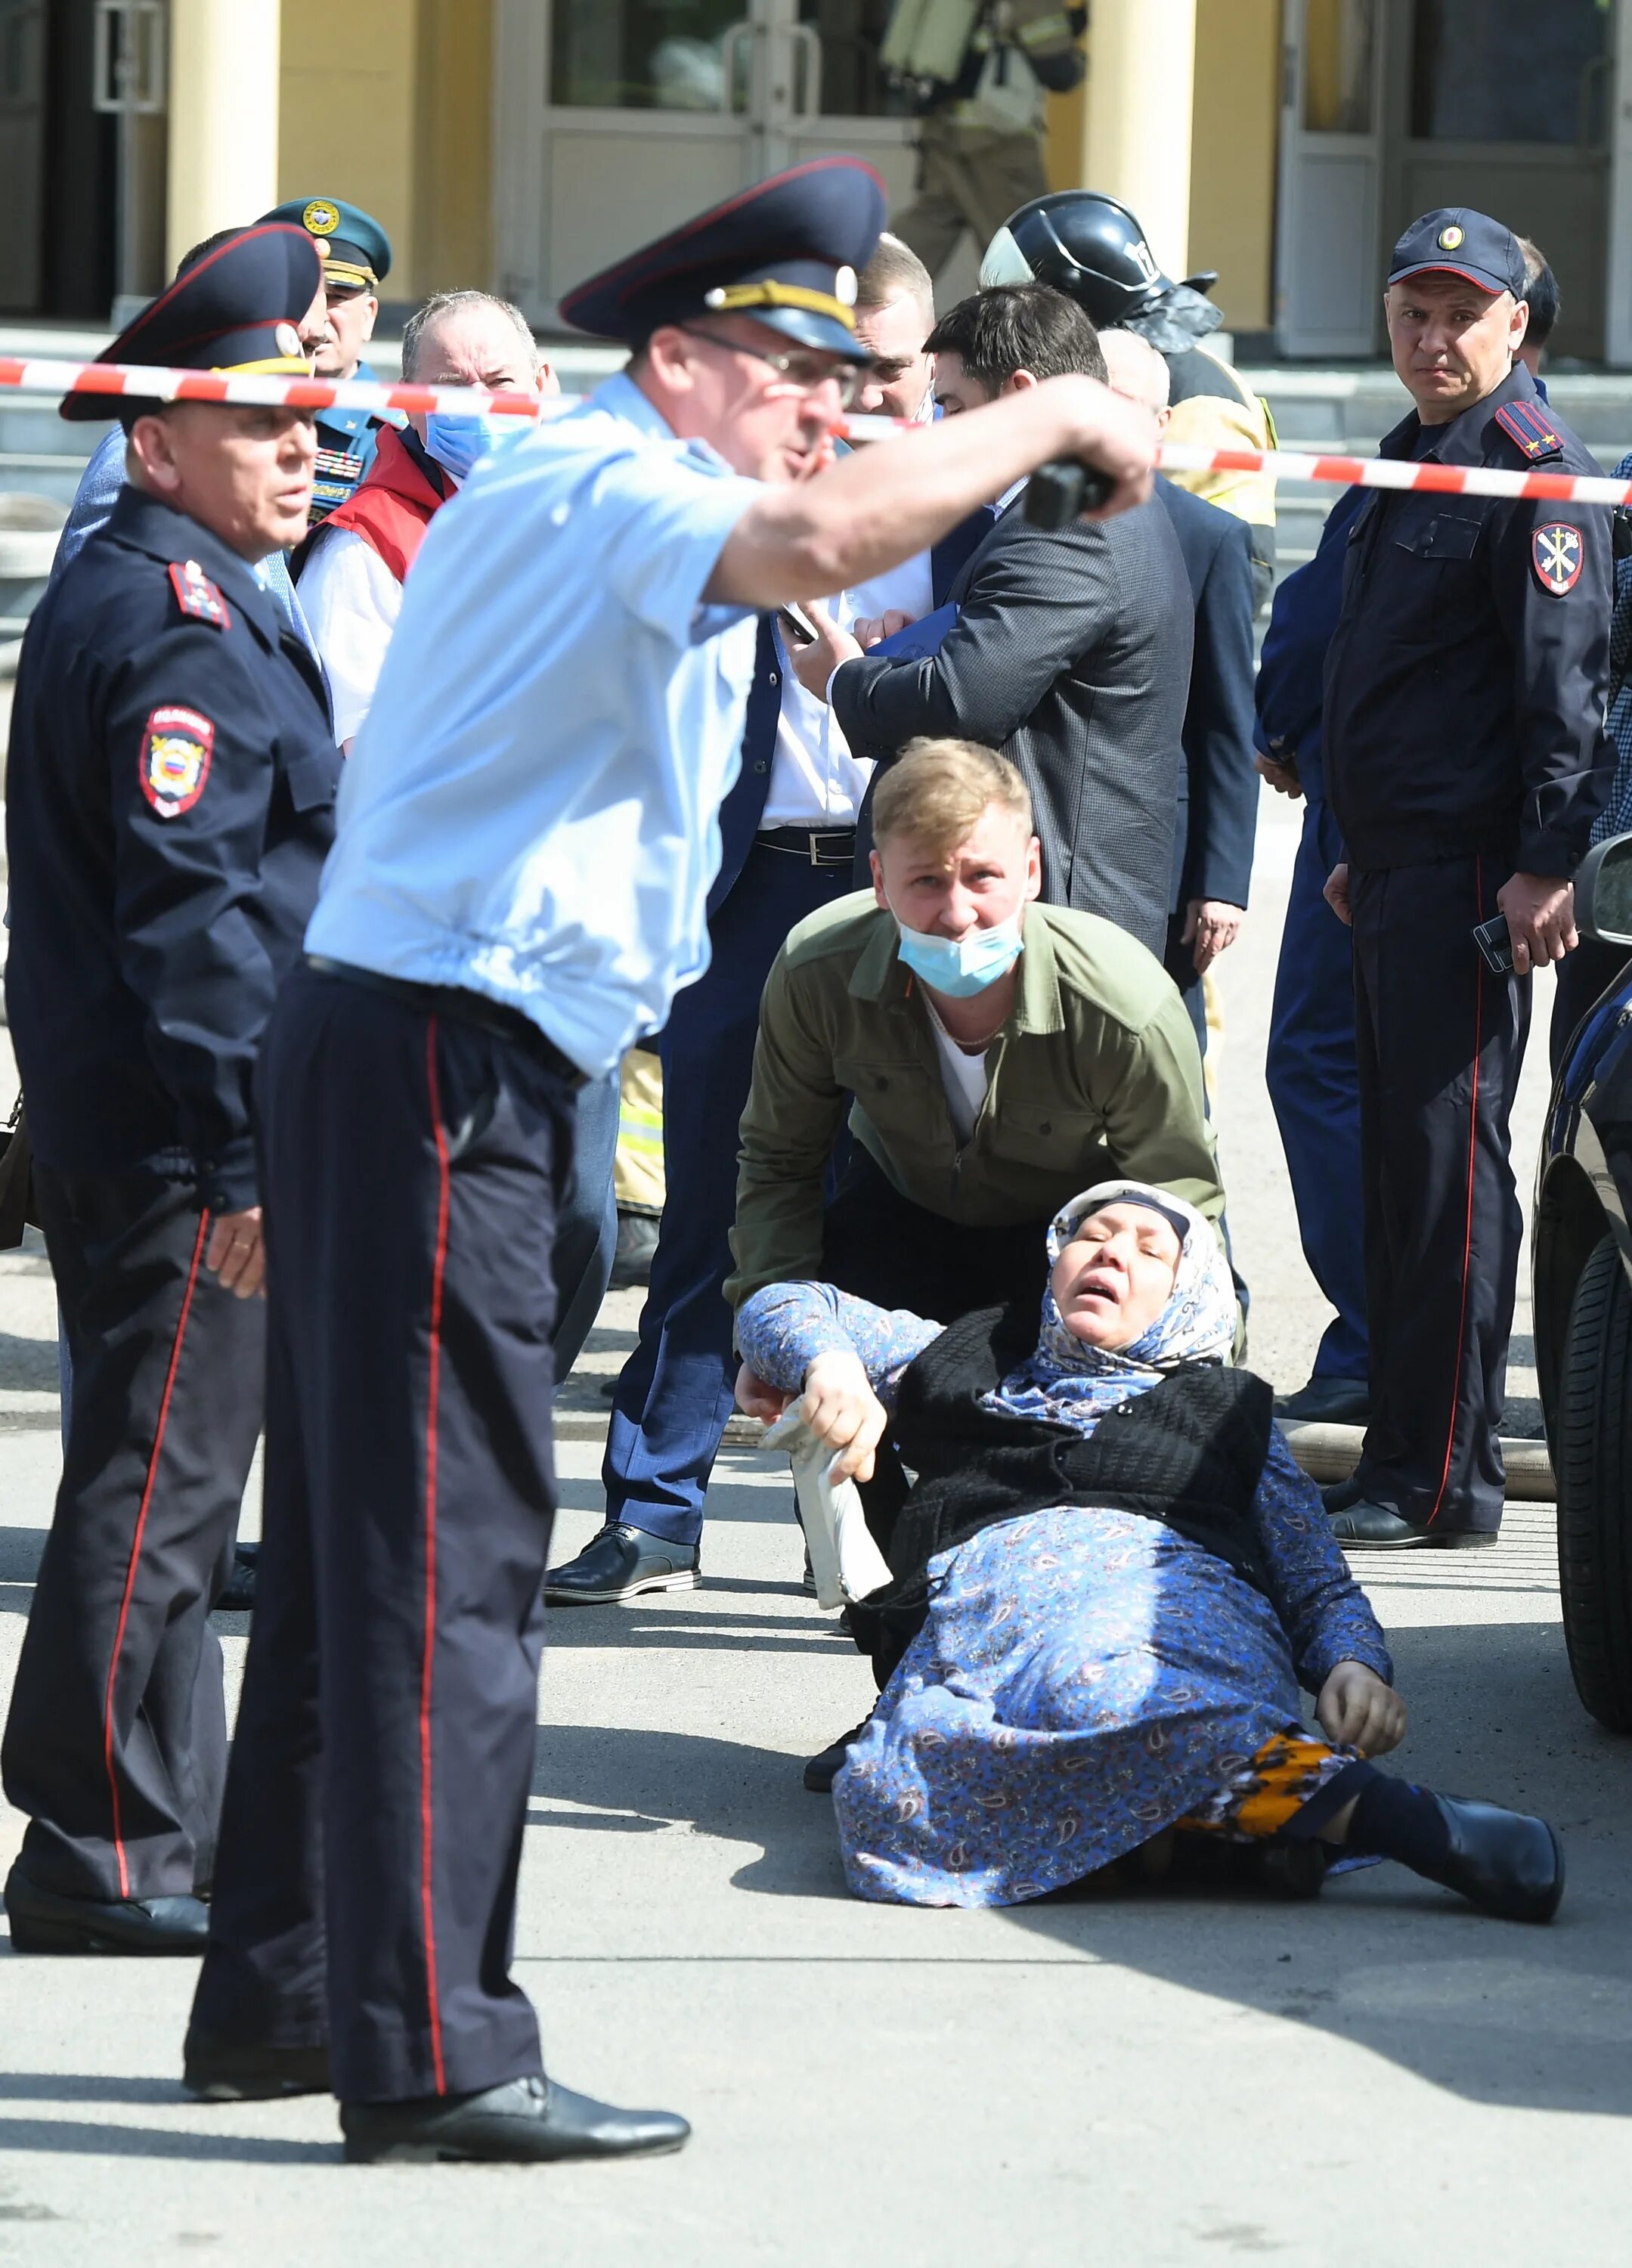 Страшные кадры из Казанской школы. Полицейские бегут фото. С 1 по 11 мая